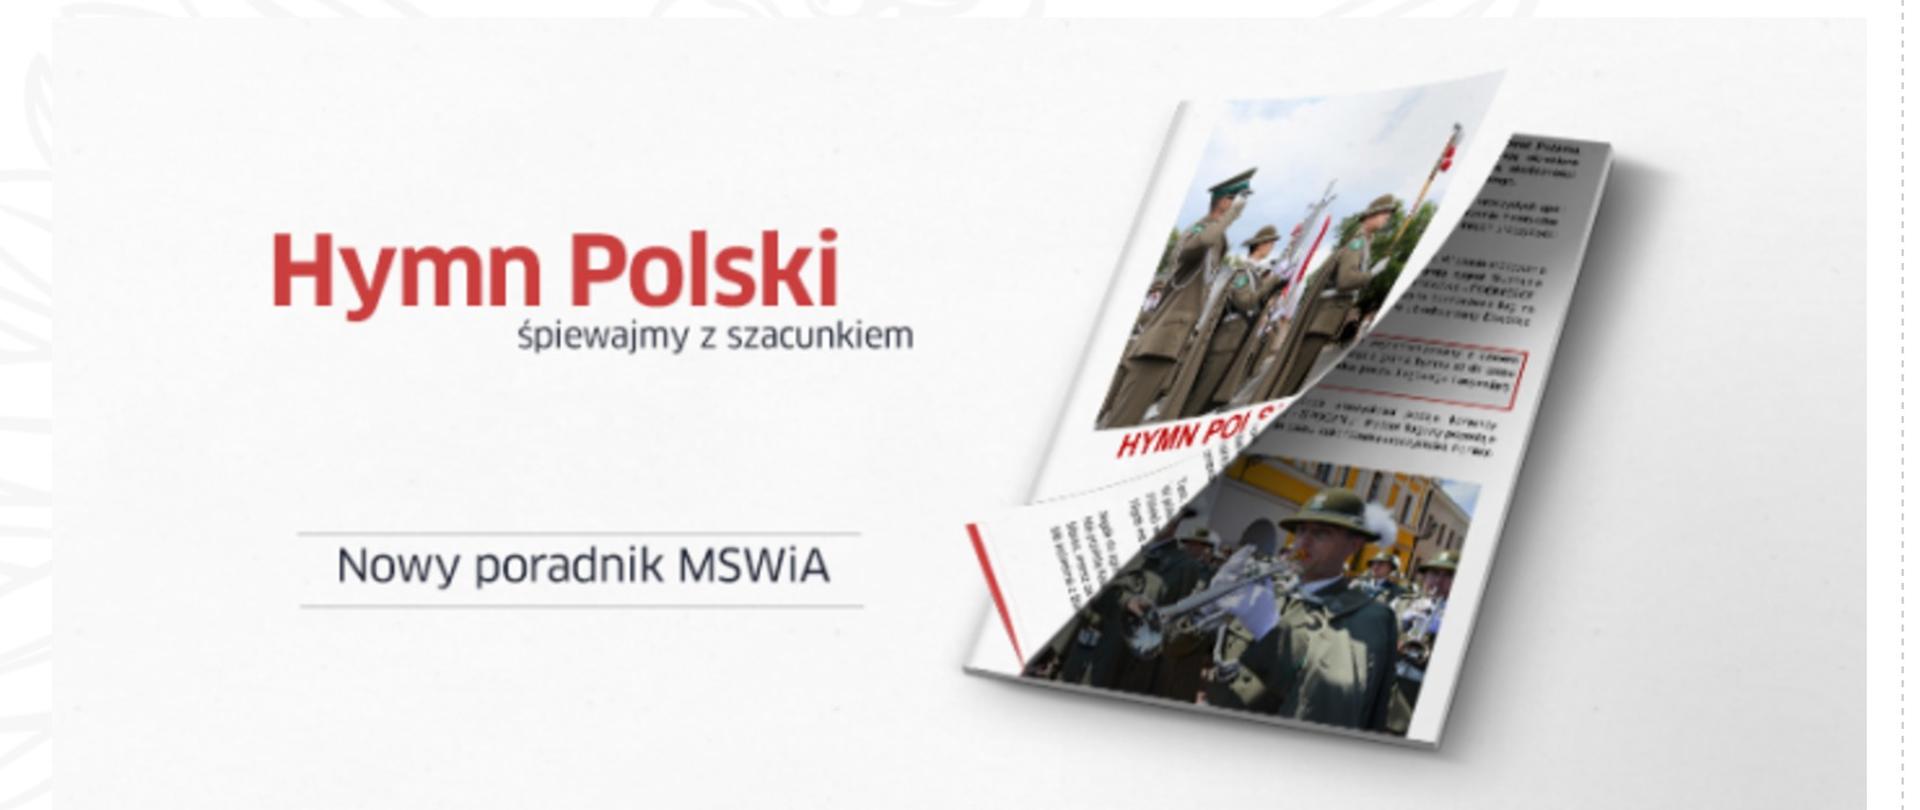 Zdjęcie przedstawia broszurę o Hymnie Polskim. Poradnik wydany przez MSWiA